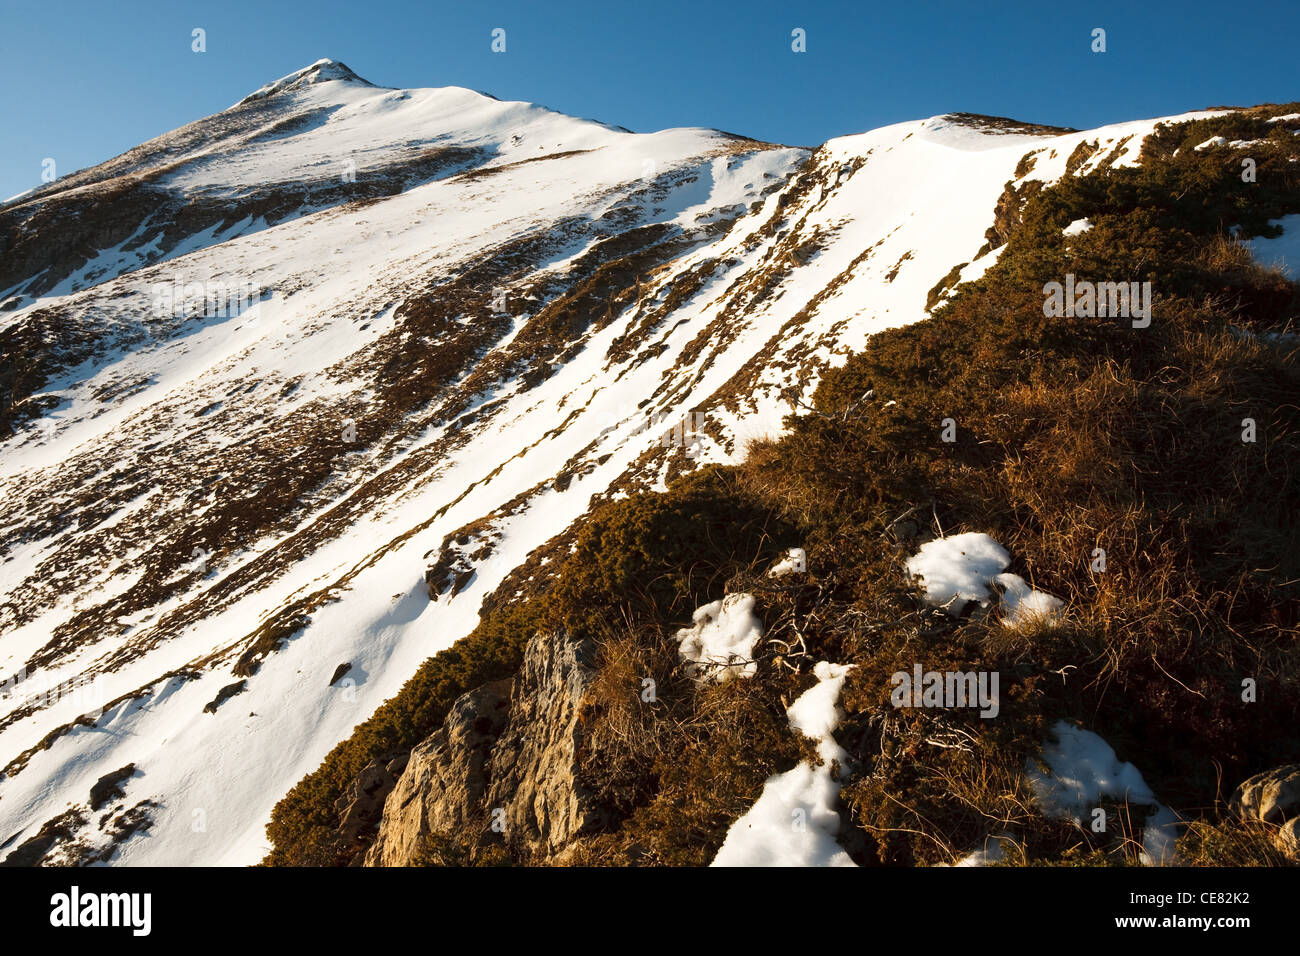 Pic de la Calabasse (2210 metres), near Saint-Lary, Pays Couserans, Ariege, Pyrenees, France. Stock Photo